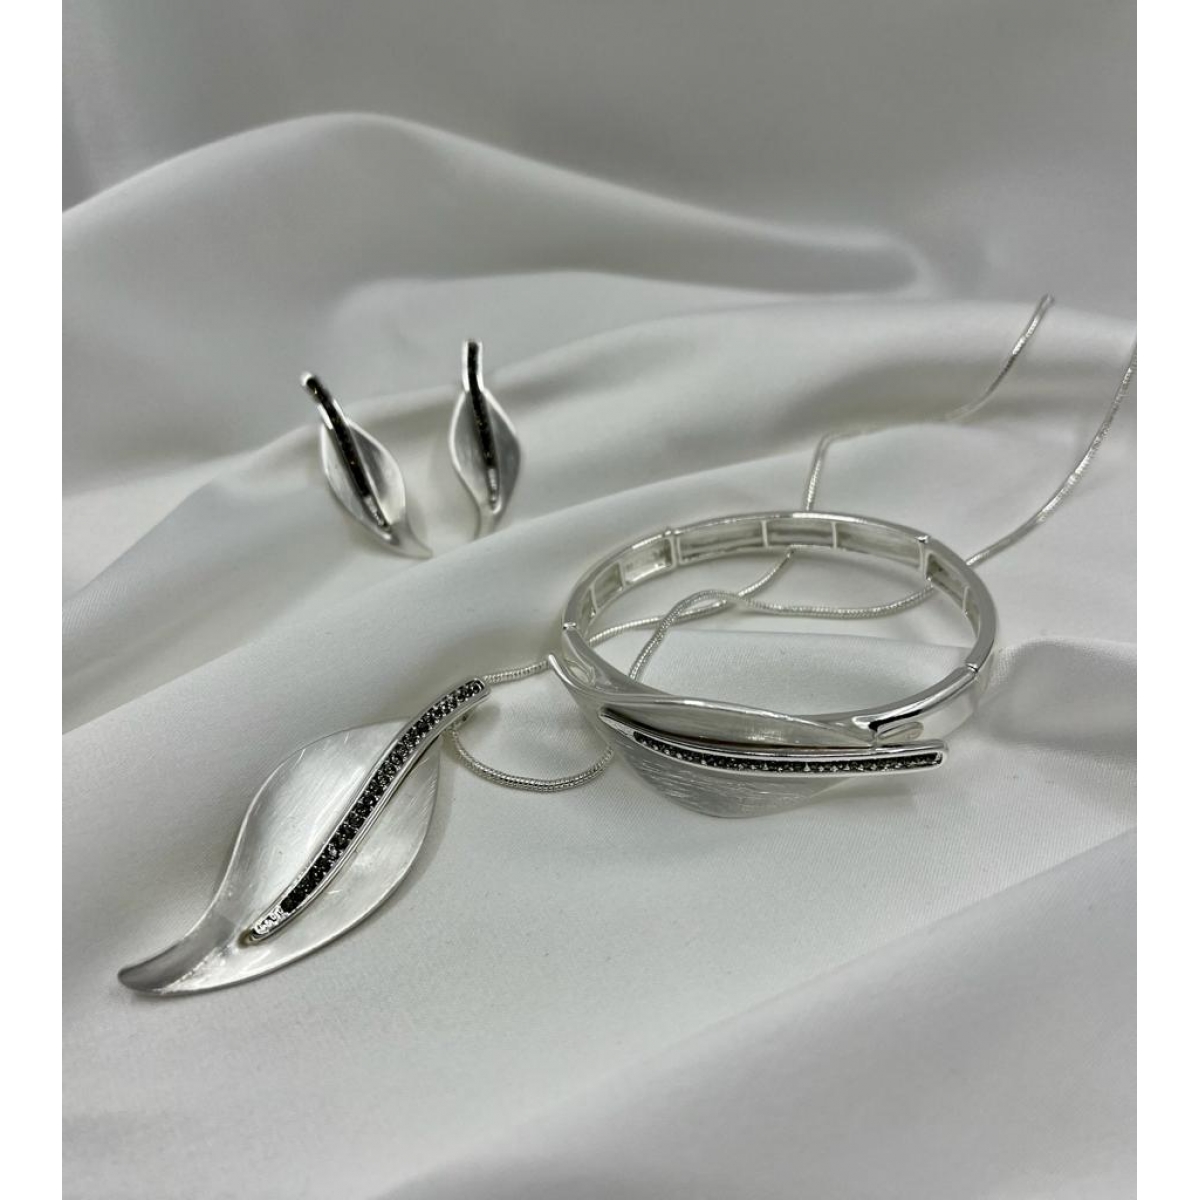 Súprava matná strieborná náhrdelníka , náušníc a náramkov zdobená s príveskom v tvare listu s drobnými krištáľmi